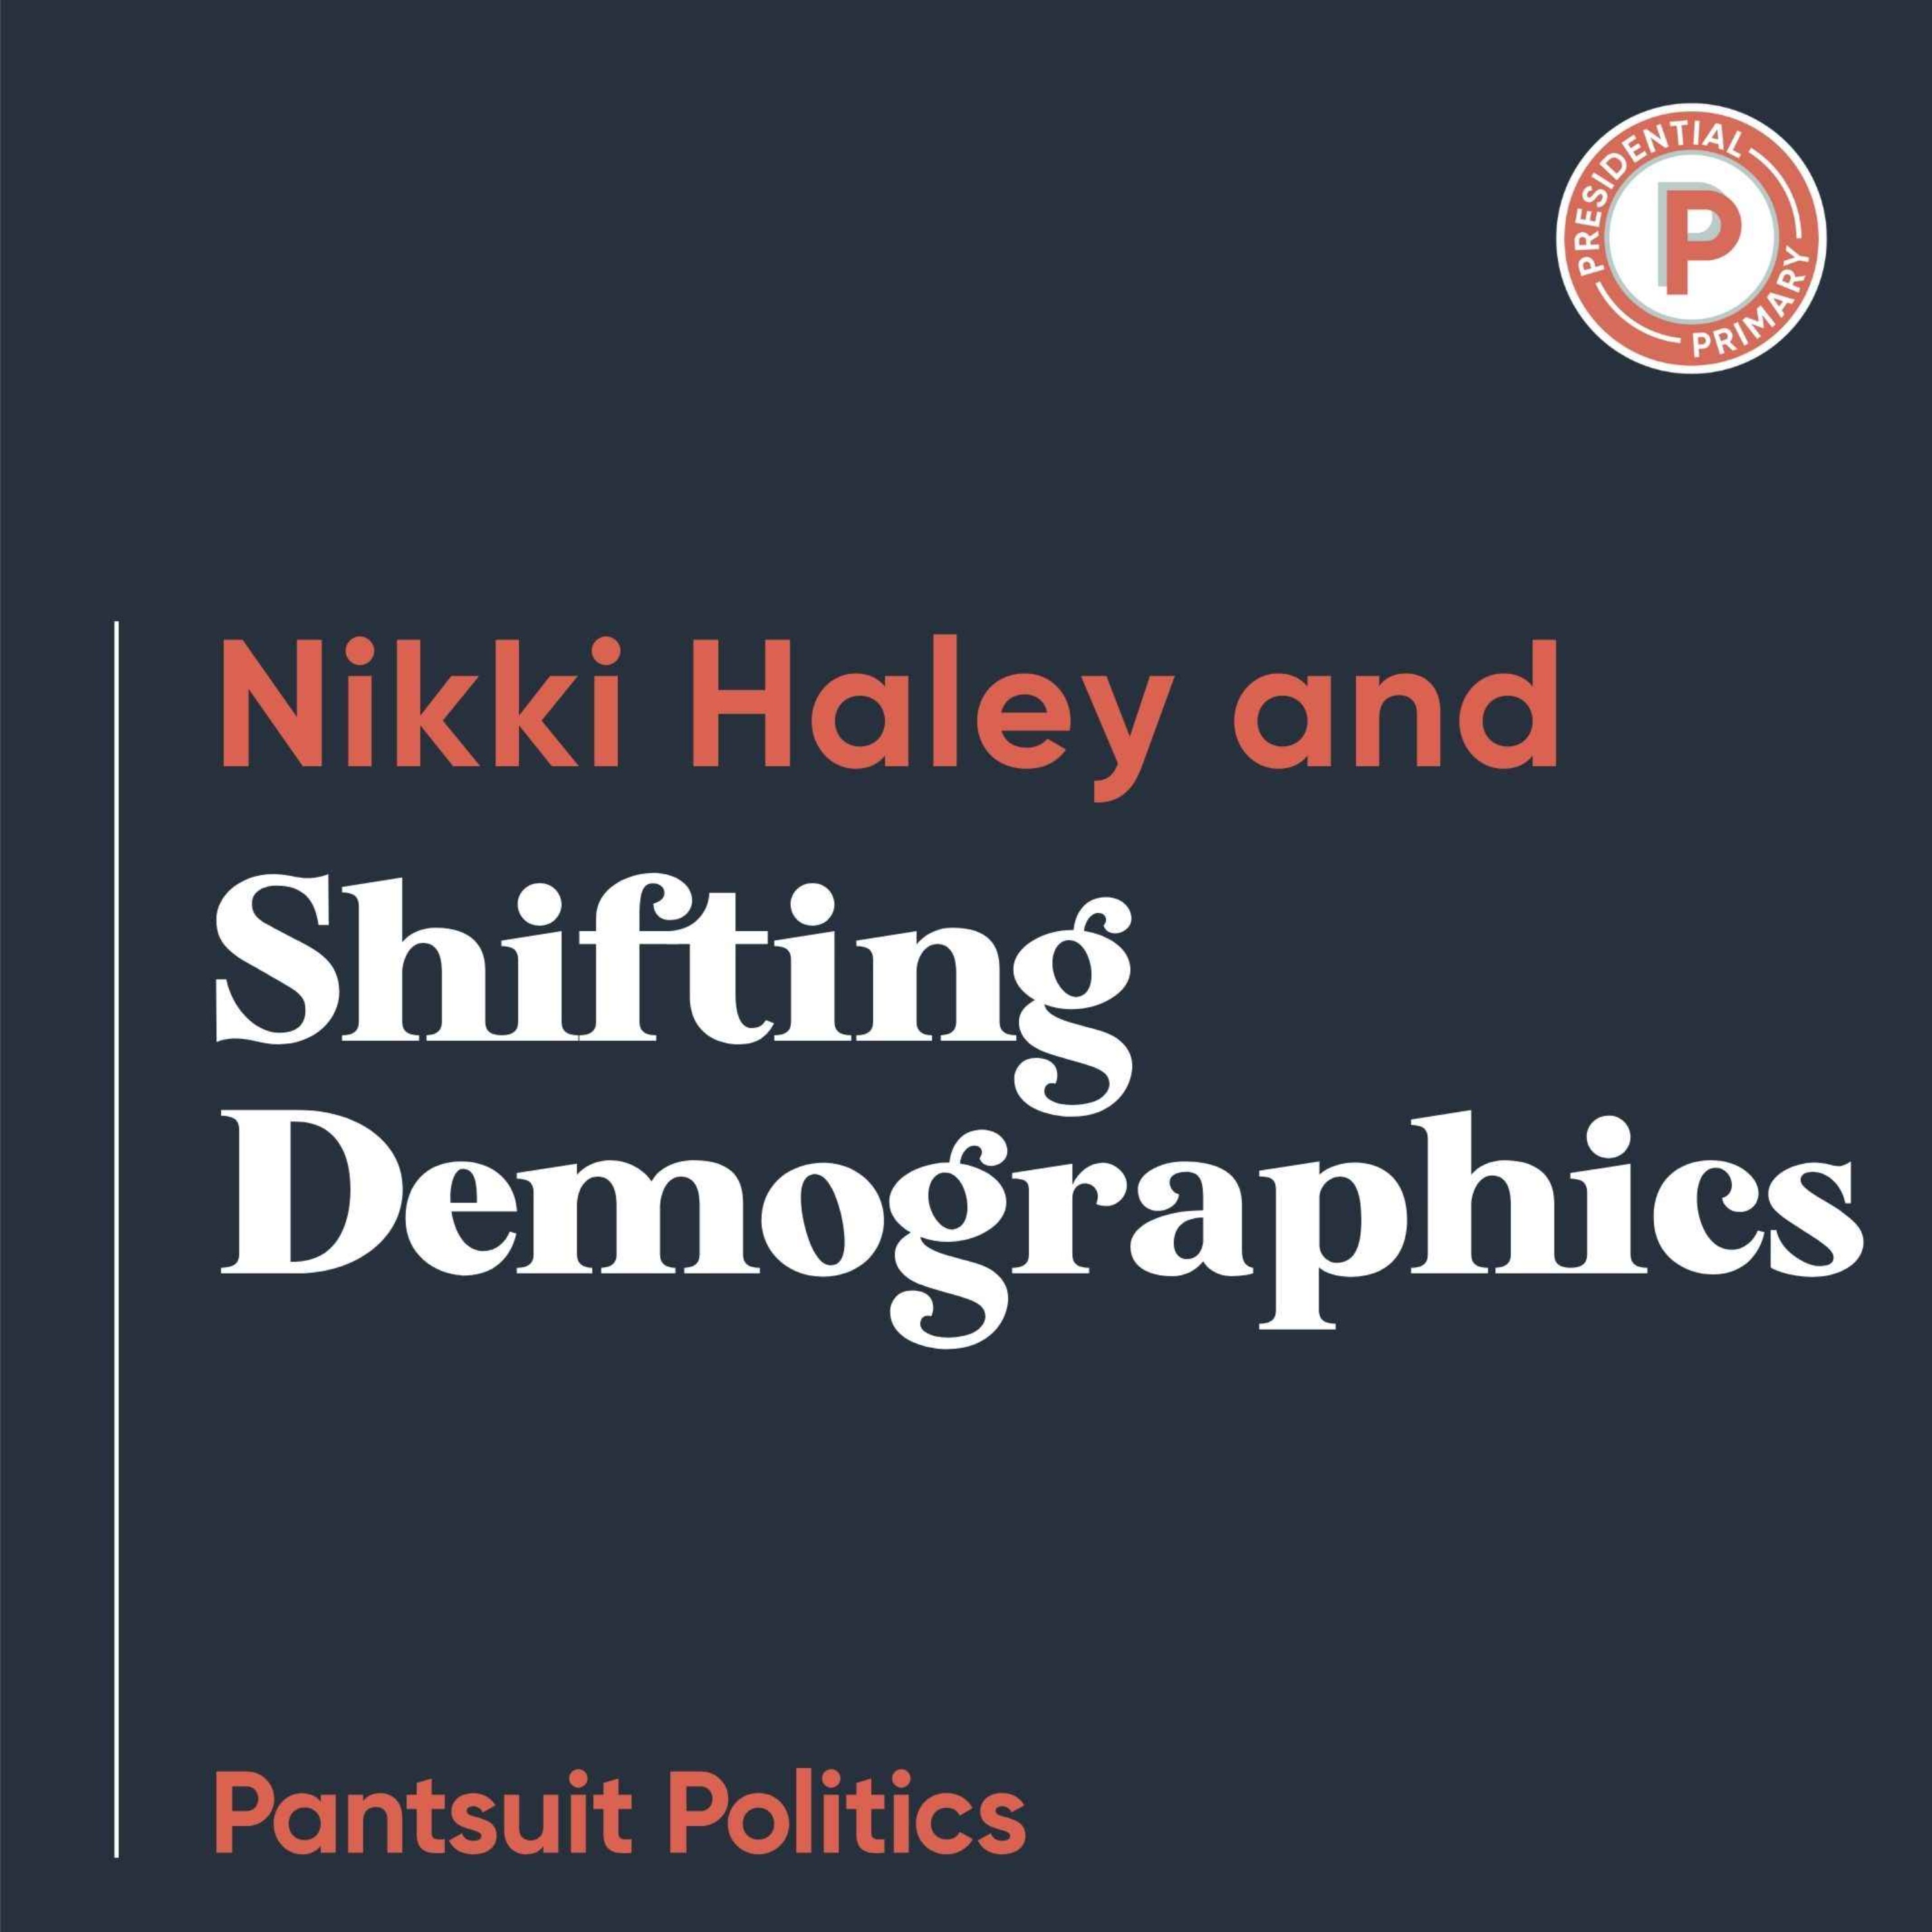 Nikki Haley and Shifting Demographics